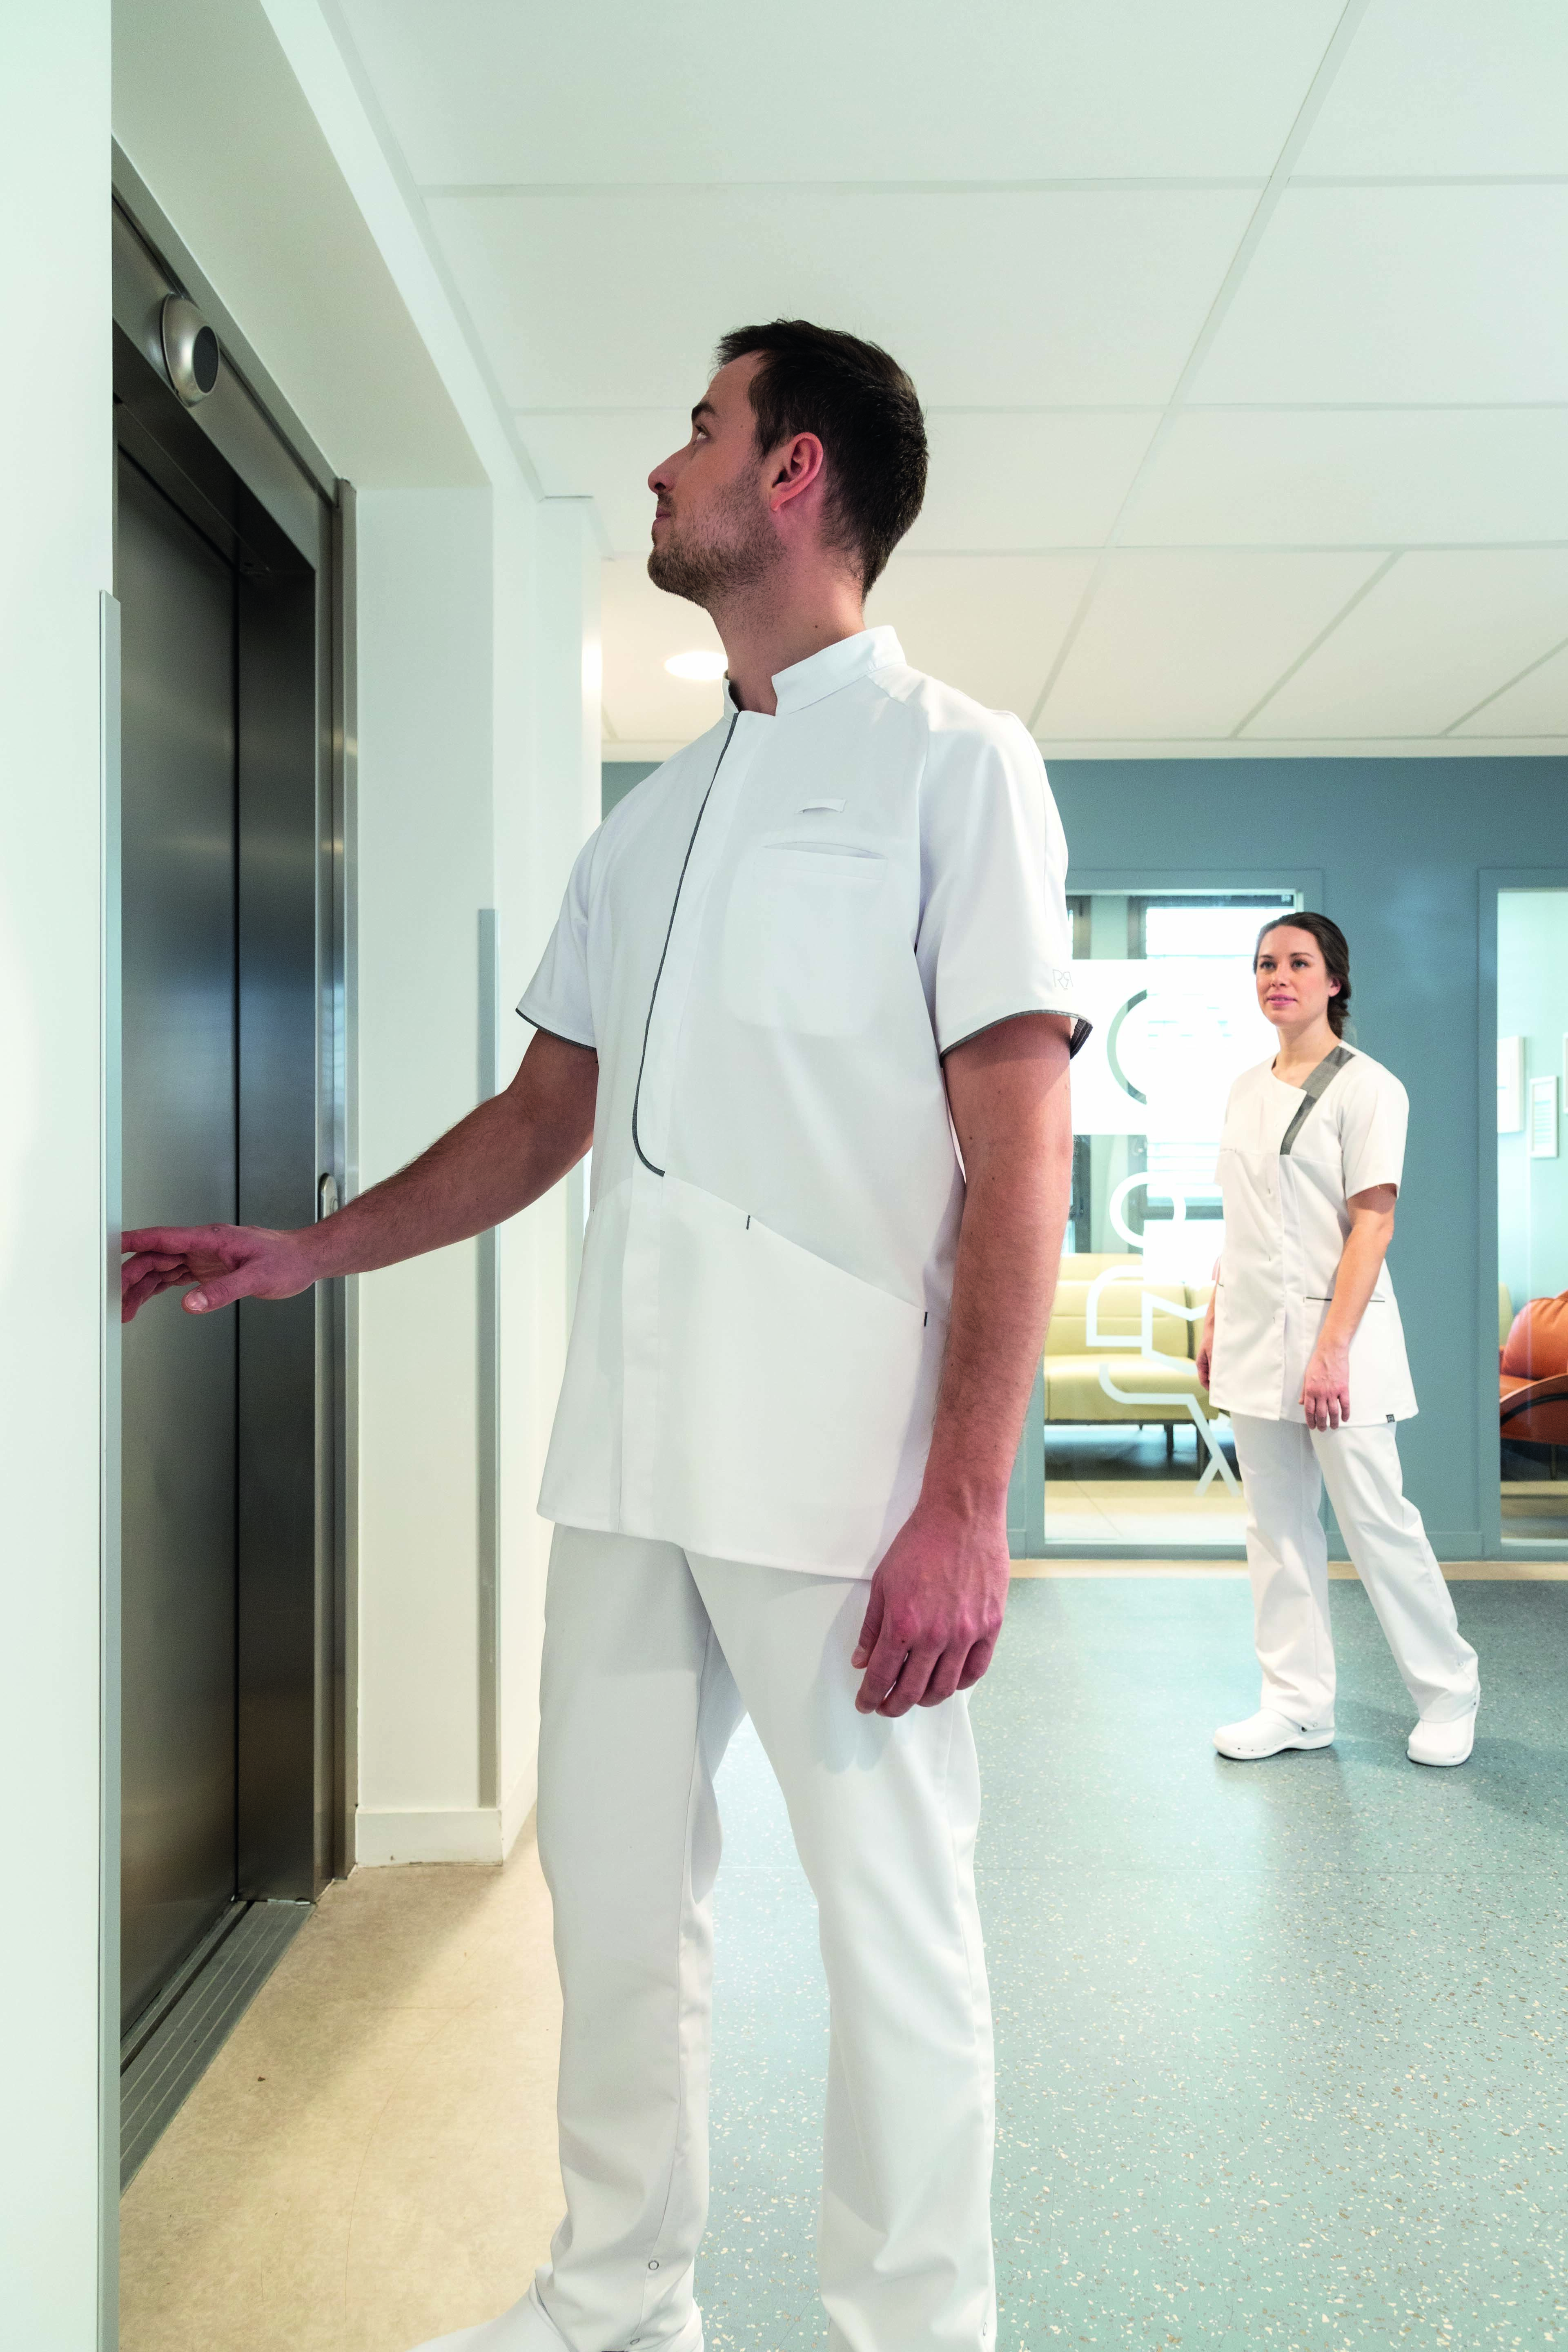 Dans un établissement de santé, deux soignants, un homme et une femme, portent des vêtements professionnels blancs de la marque Robur.